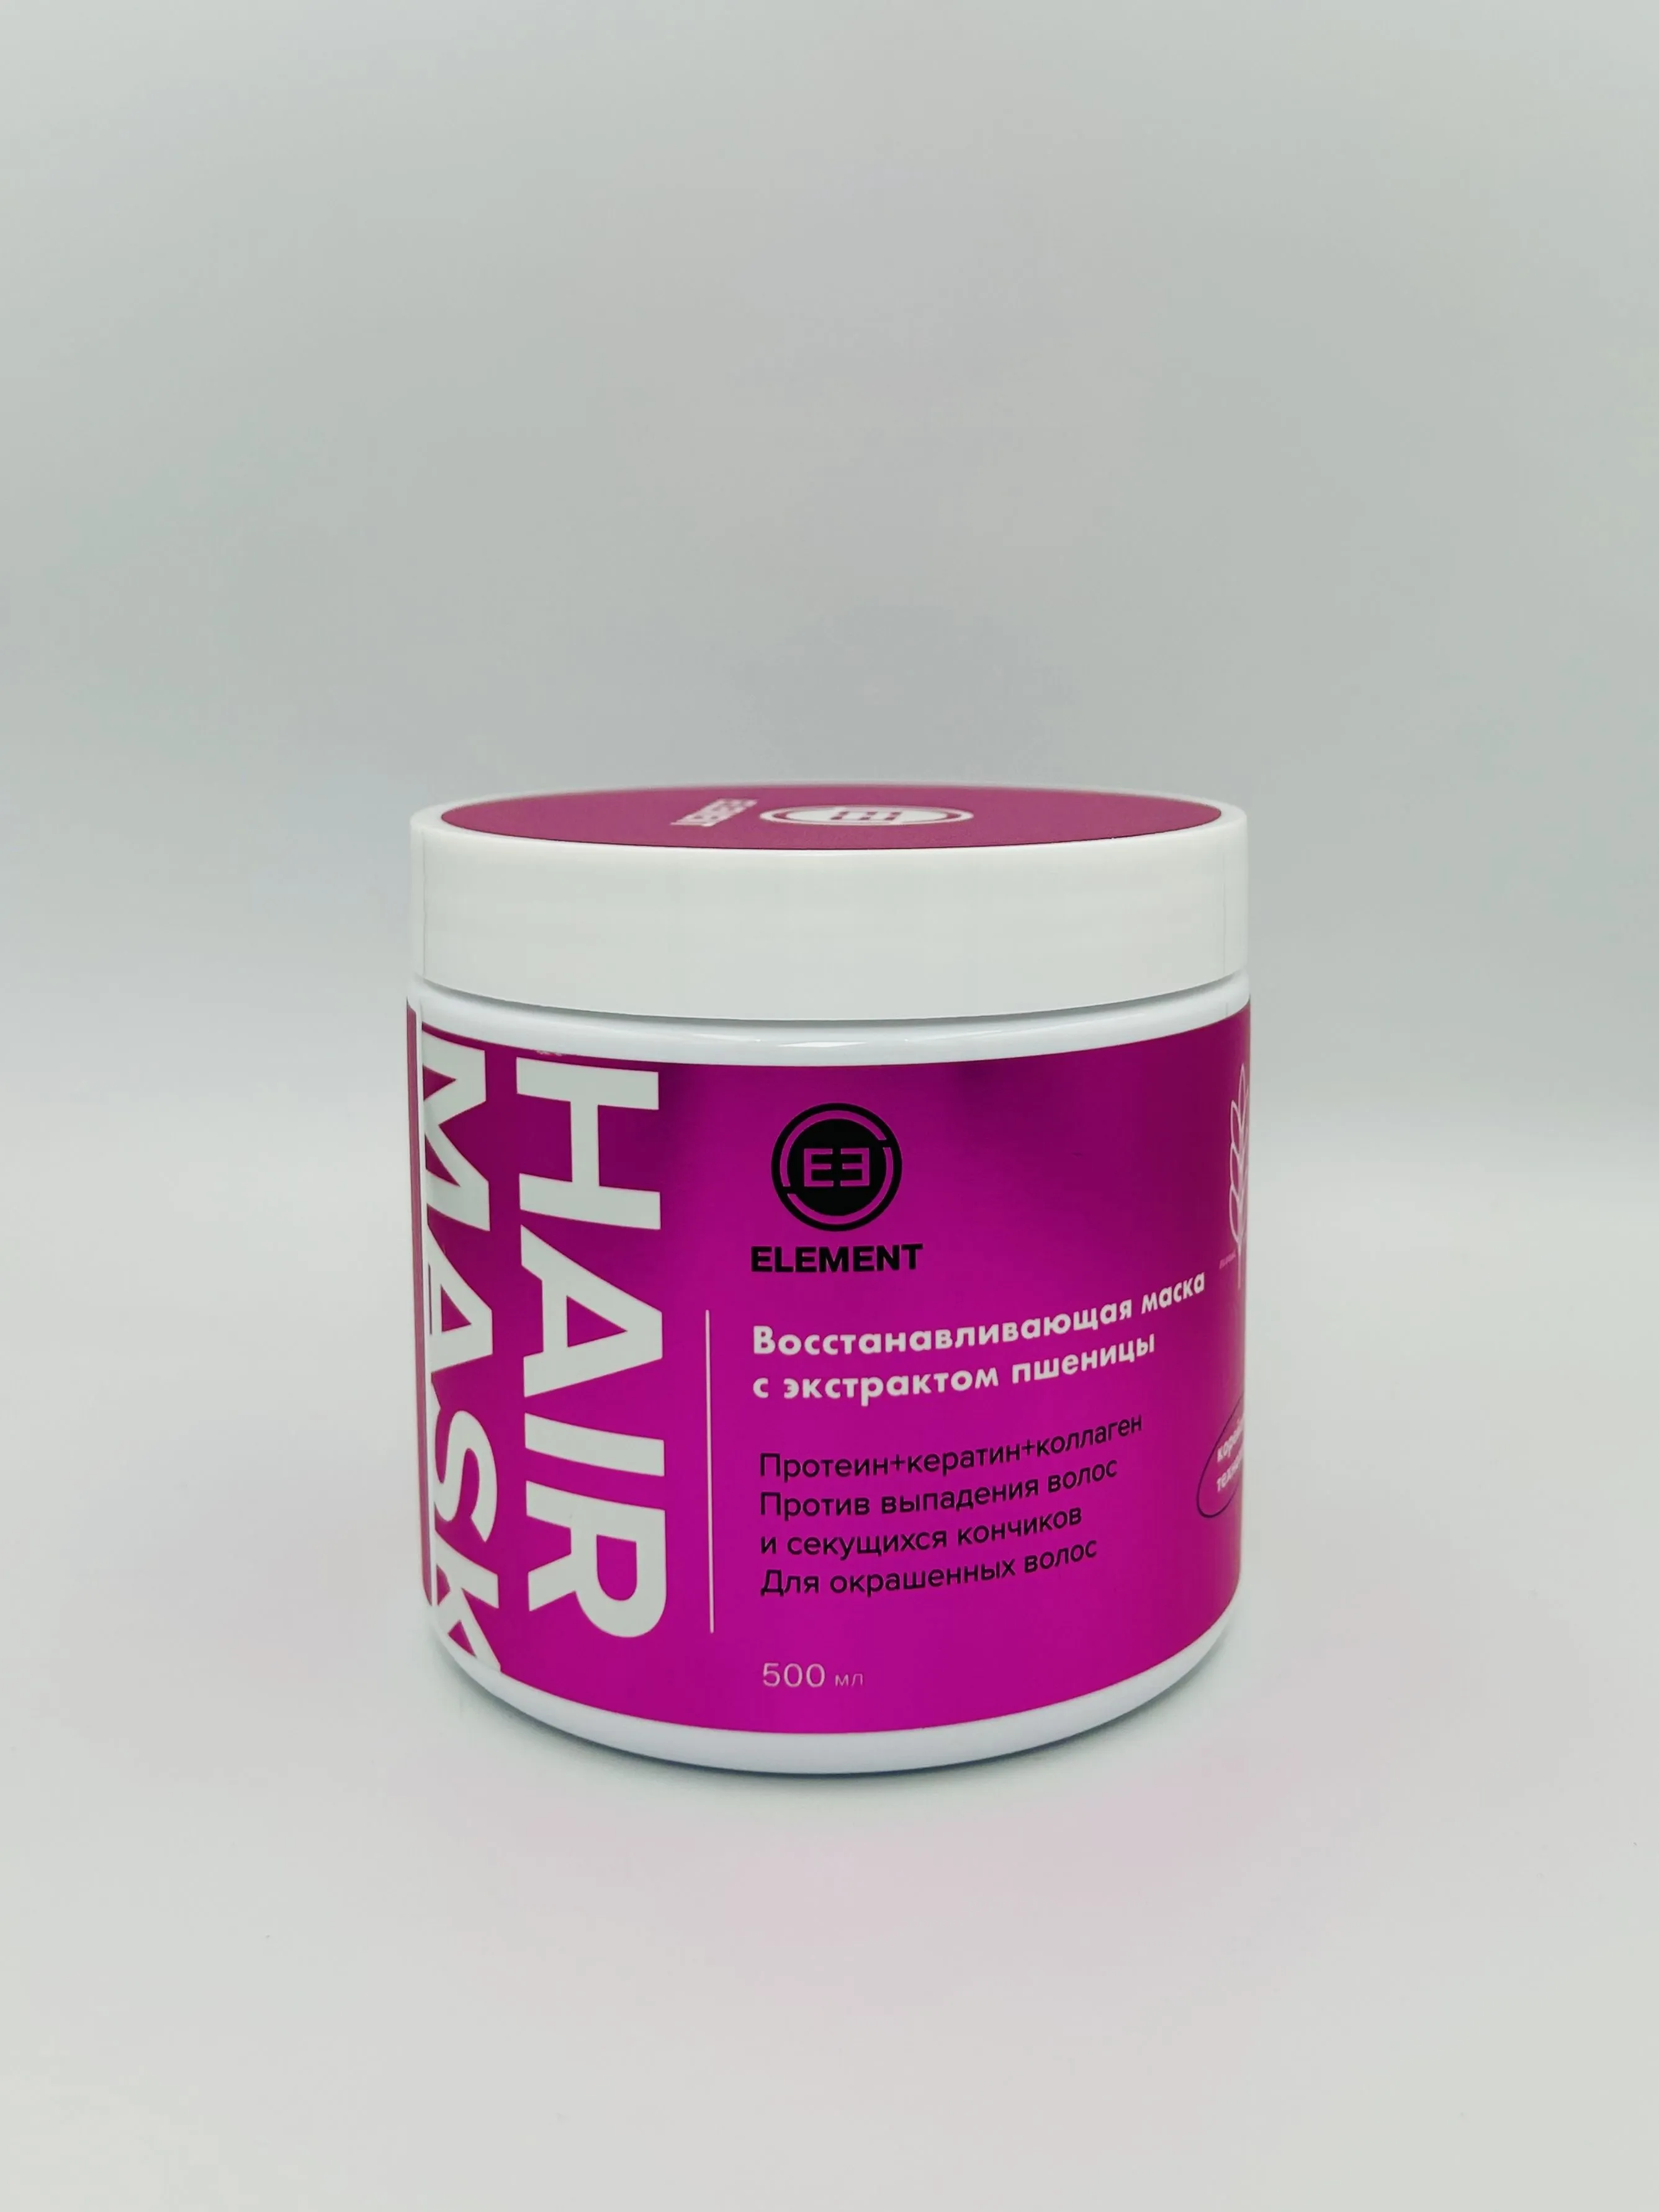 Element Маска для волос восстанавливающая с экстрактом пшеницы 500 мл